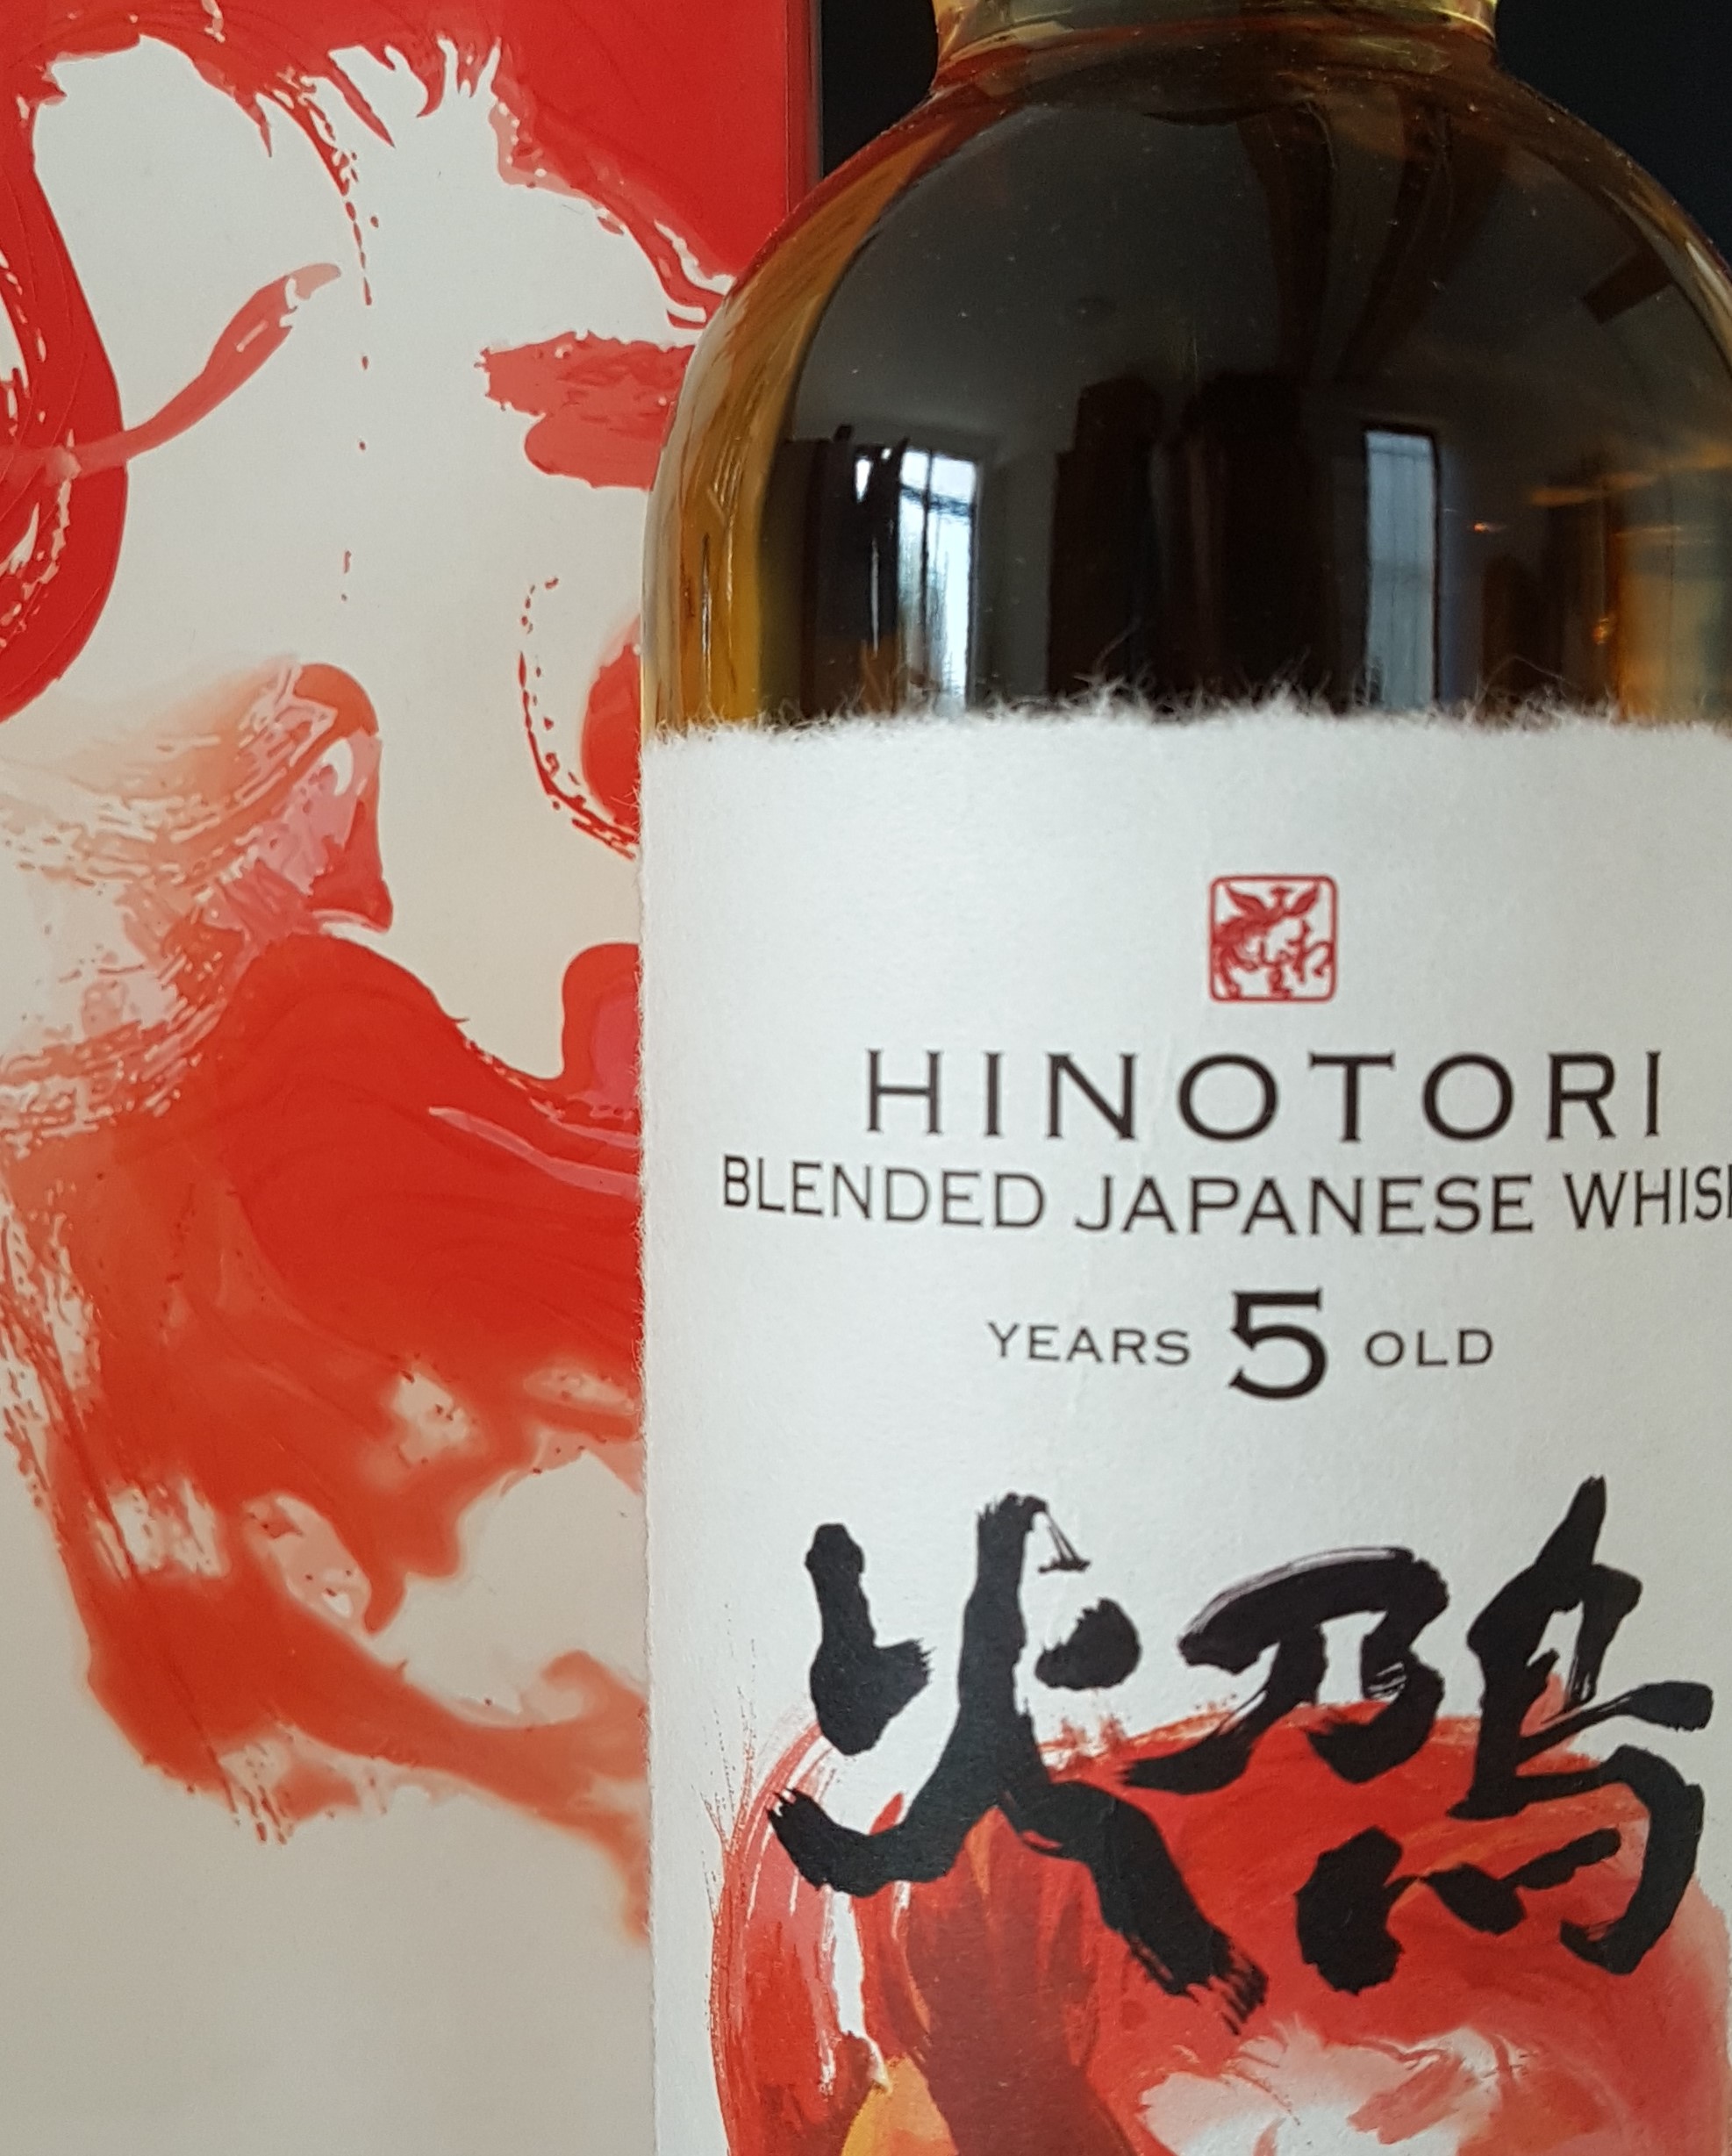 Japanese whisky Hinotori 5 years